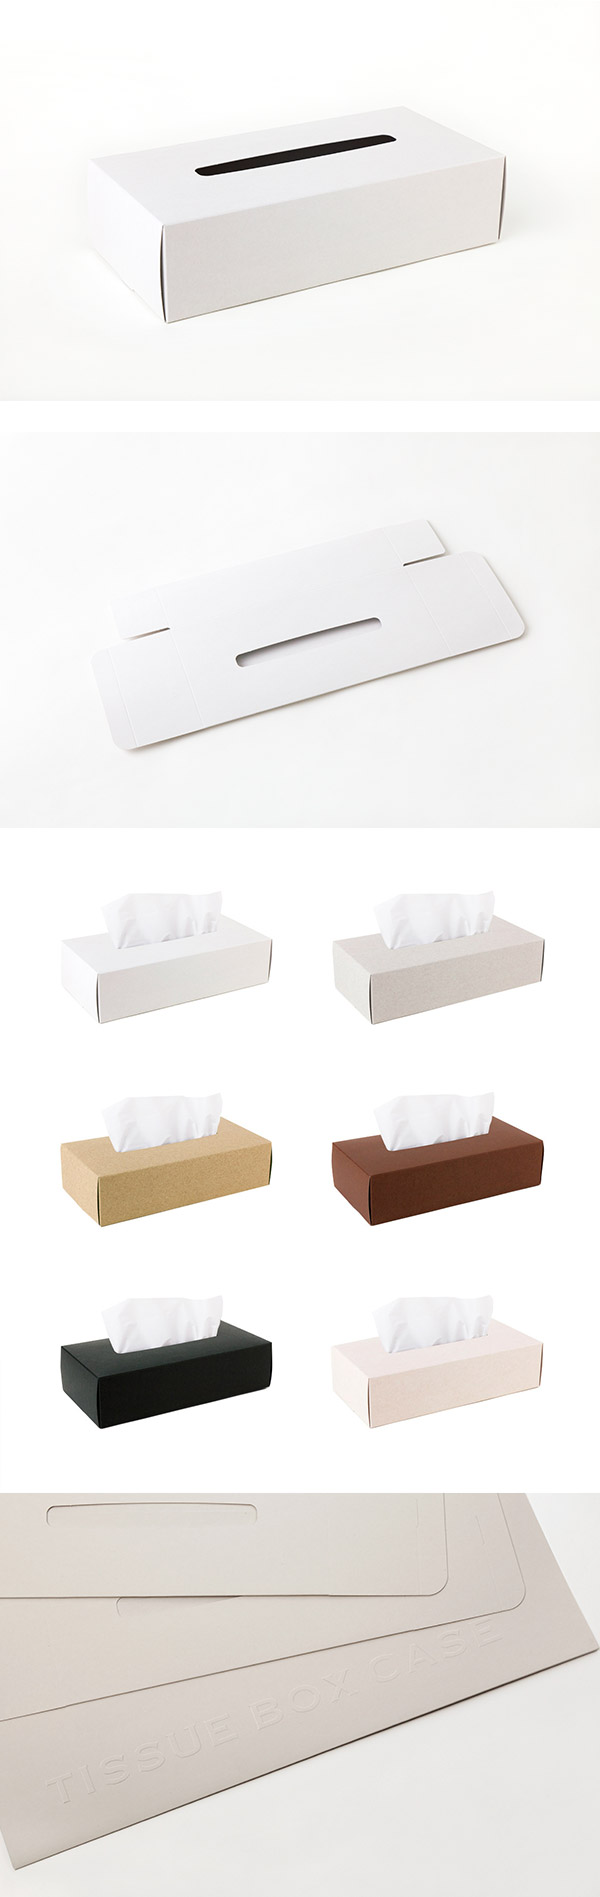 【4/30~5/6精選品牌9折優惠】Perrocaliente TISSUE BOX CASE 面紙盒 2入 白色